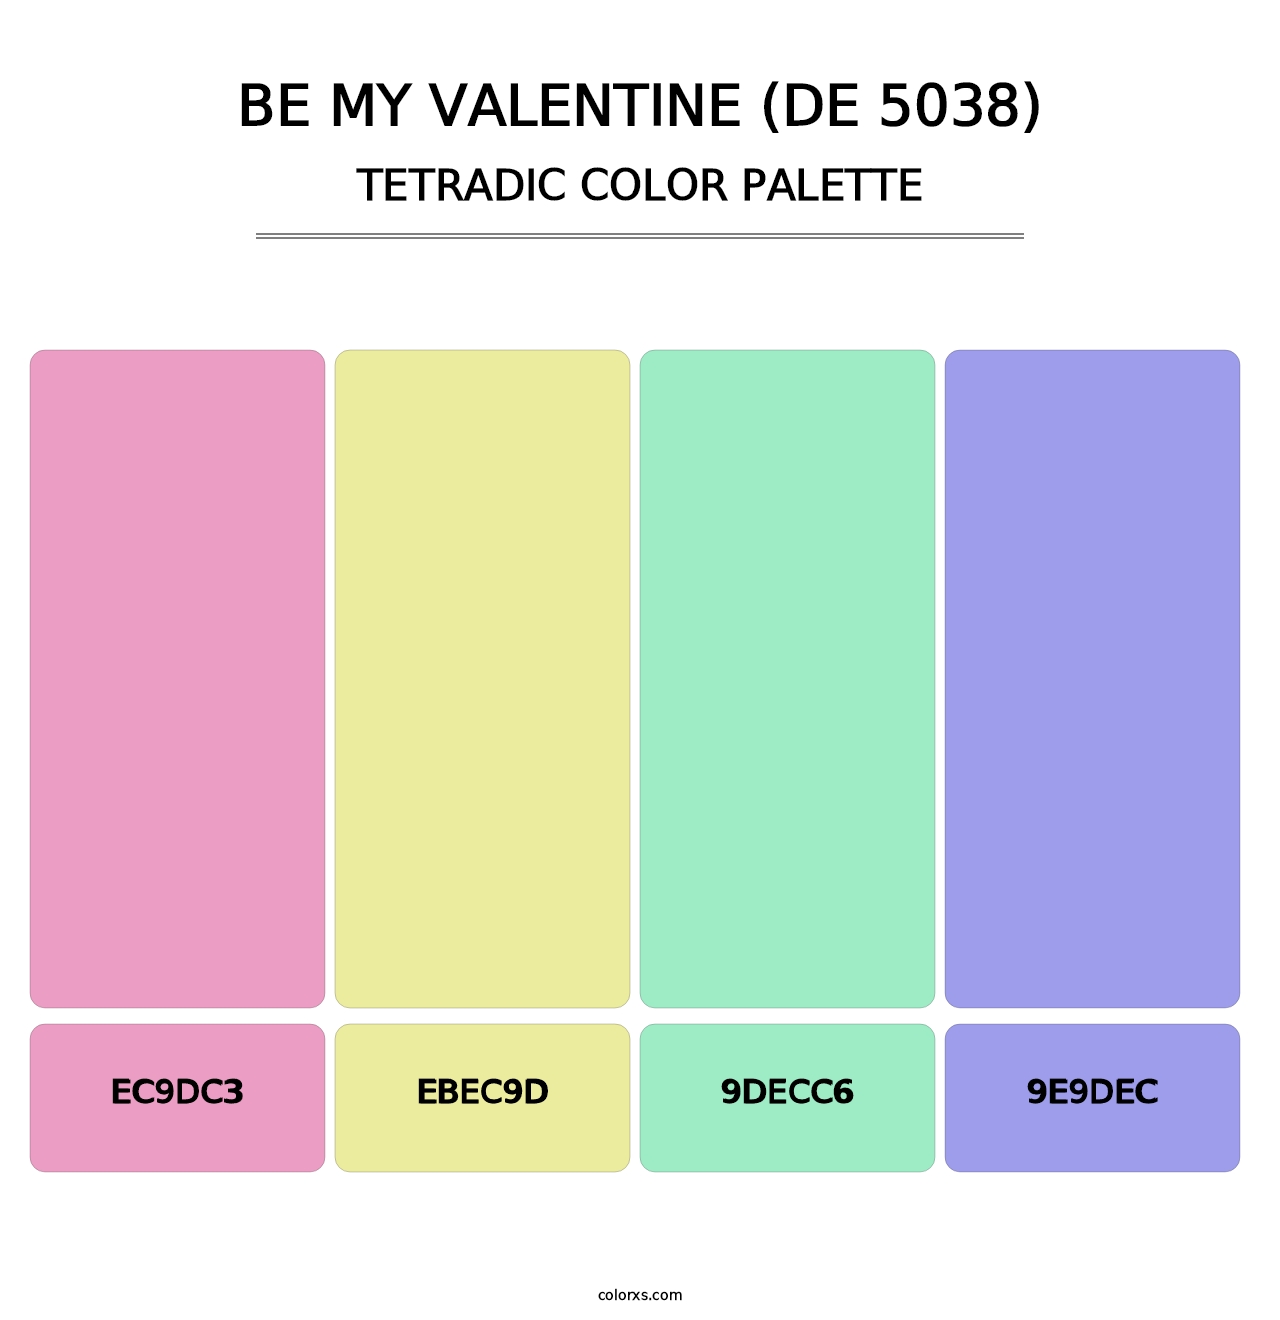 Be My Valentine (DE 5038) - Tetradic Color Palette